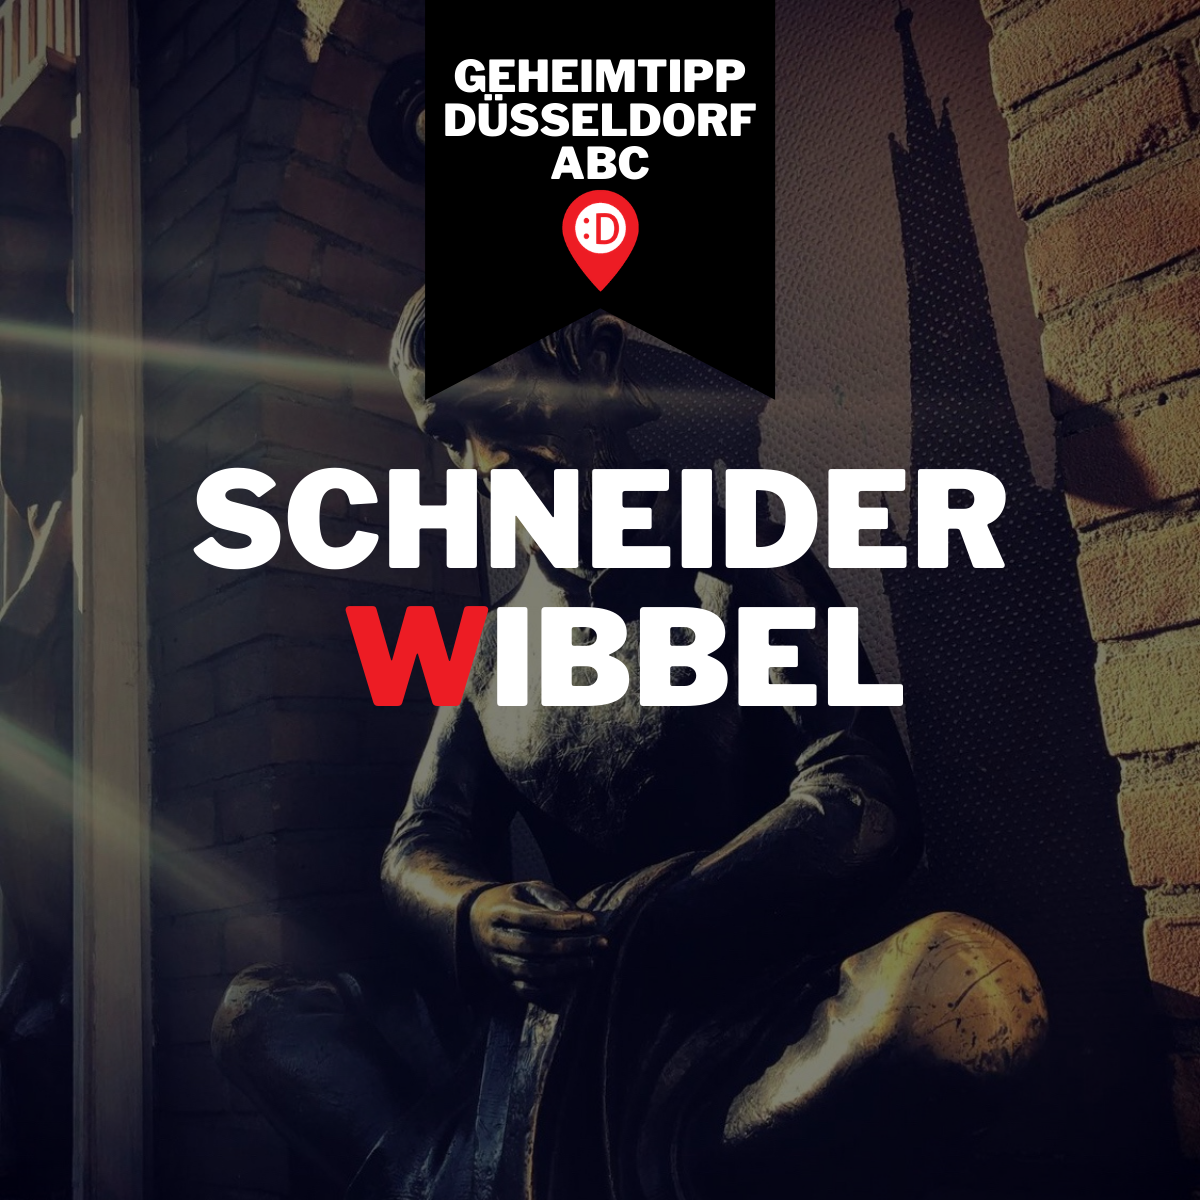 Düsseldorf ABC - W, wie Schneider Wibbel